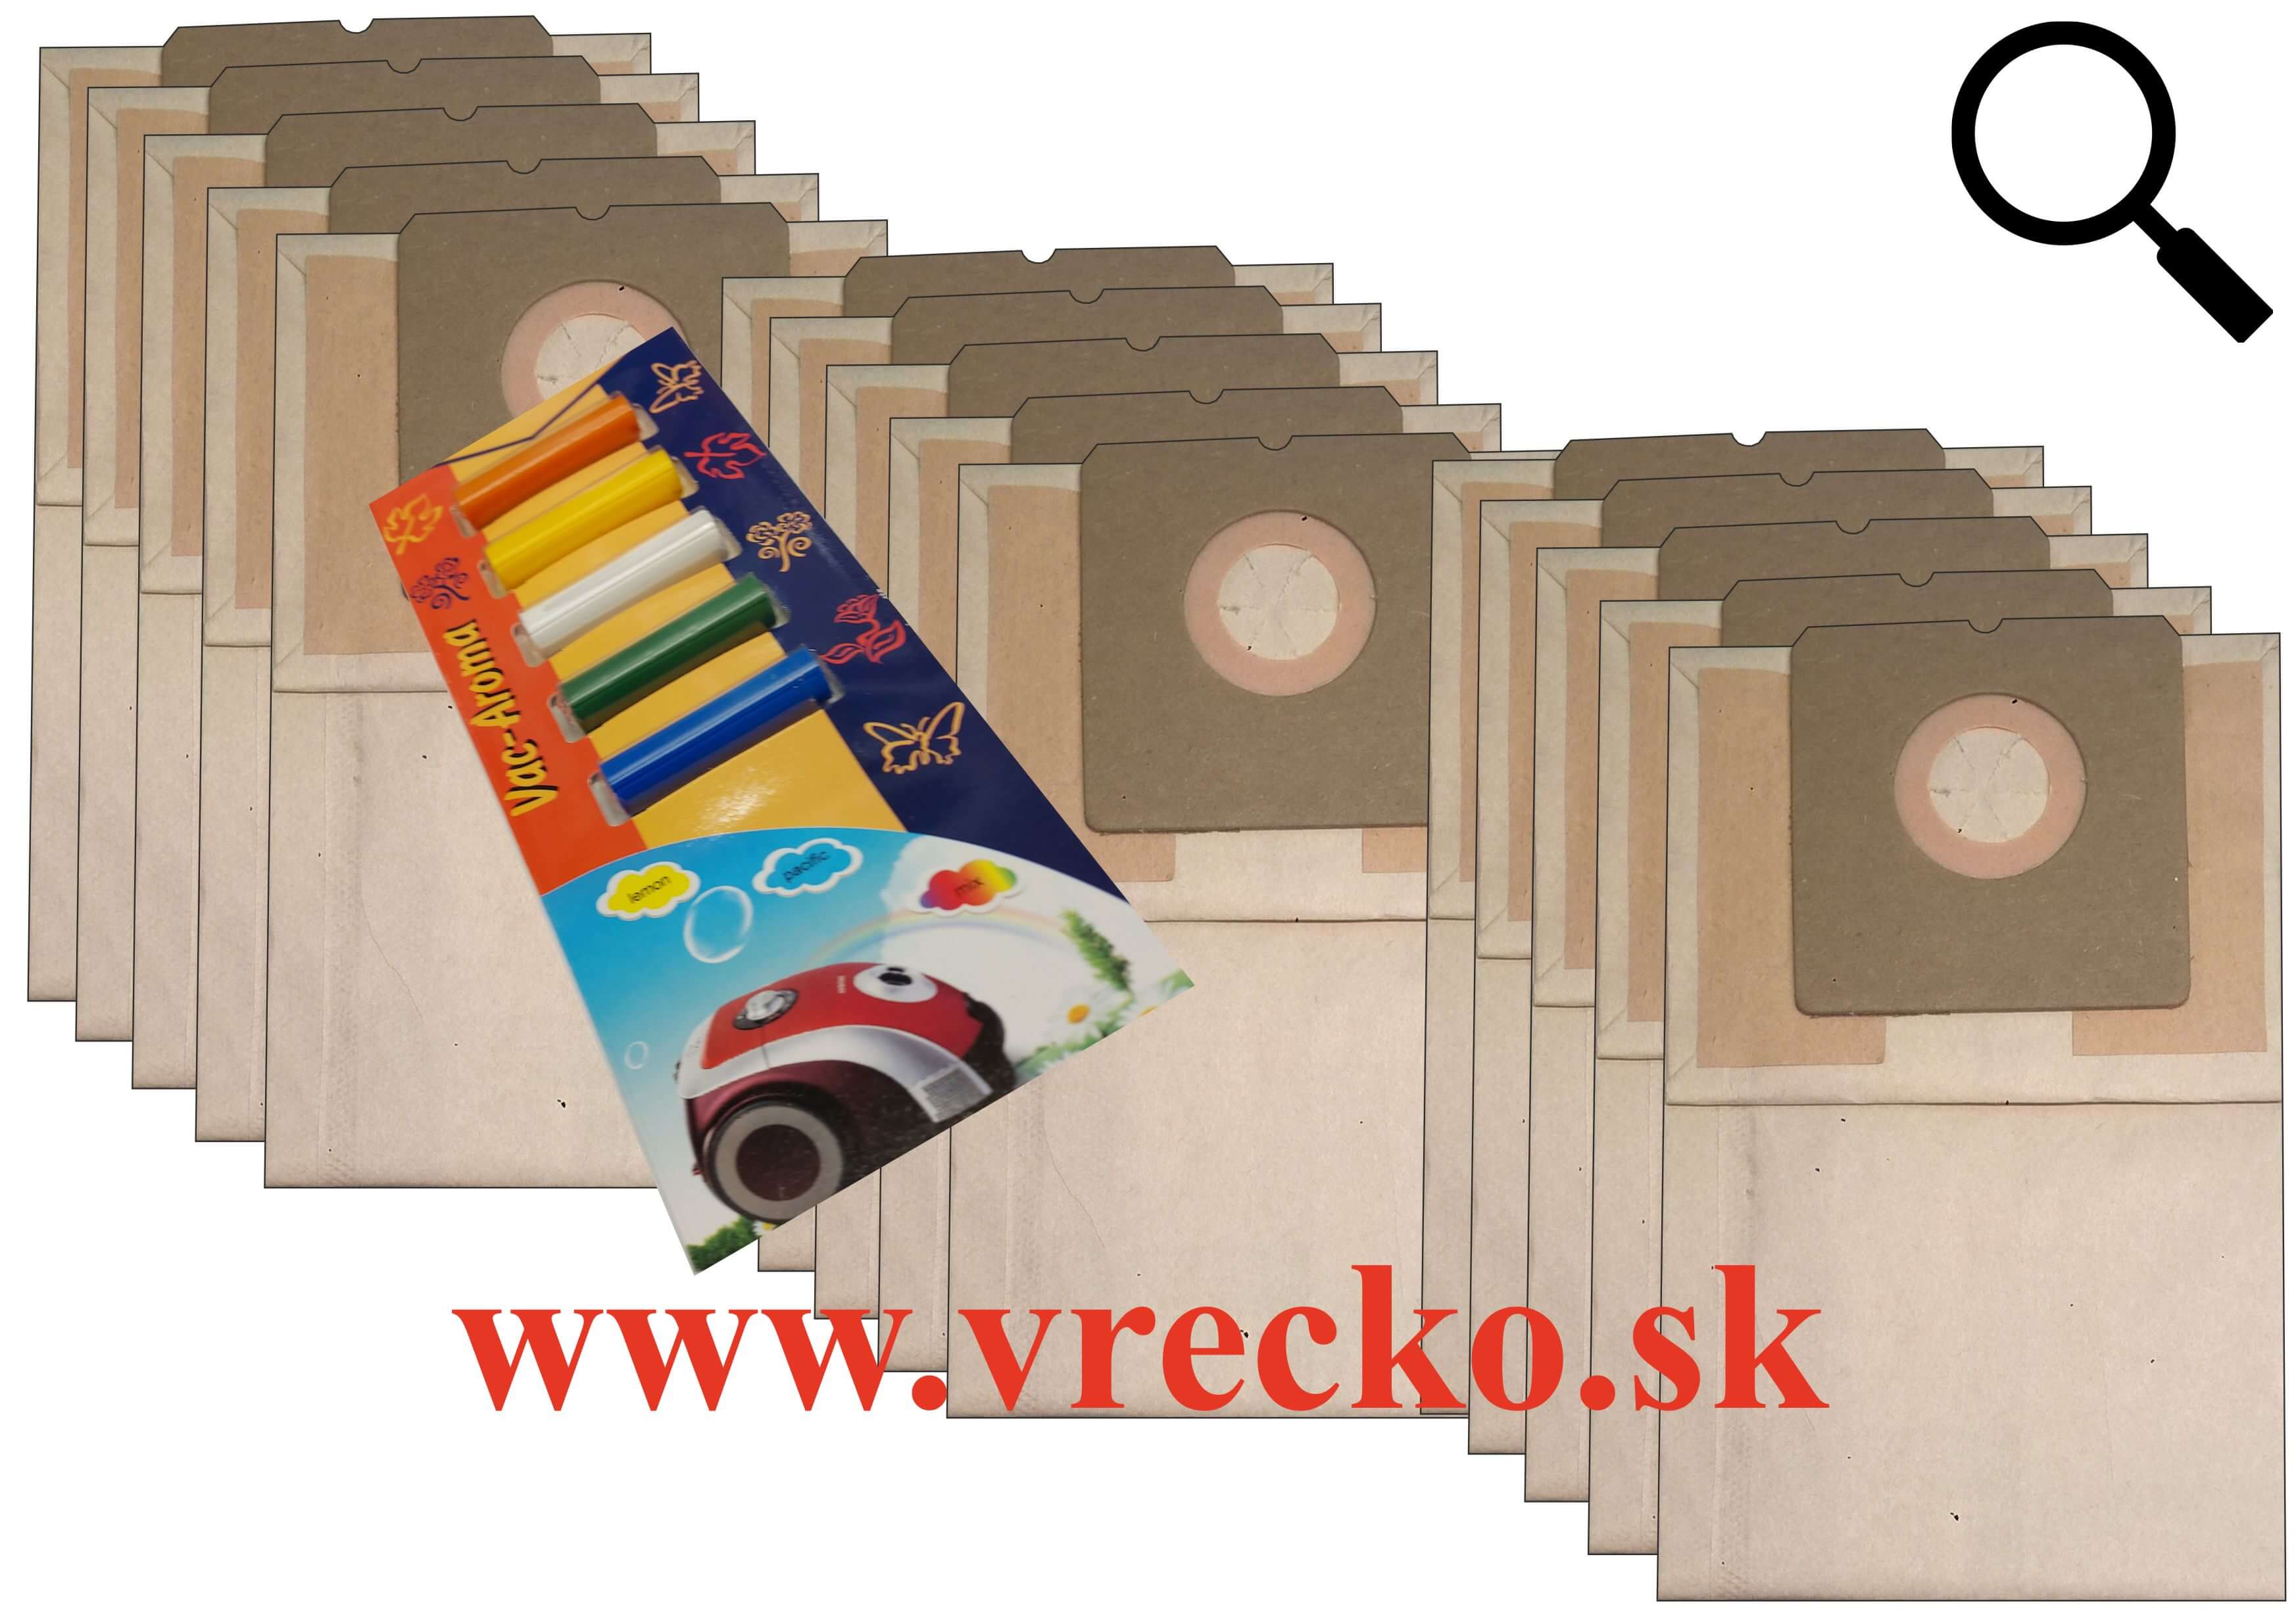 Tesco VC 207 - XL zvýhodnené balenie papierových vreciek do vysávača + 5 ks vôní do vysávačov MIX ZDARMA za cenu 3,99 (celkovo vreciek 15 ks)